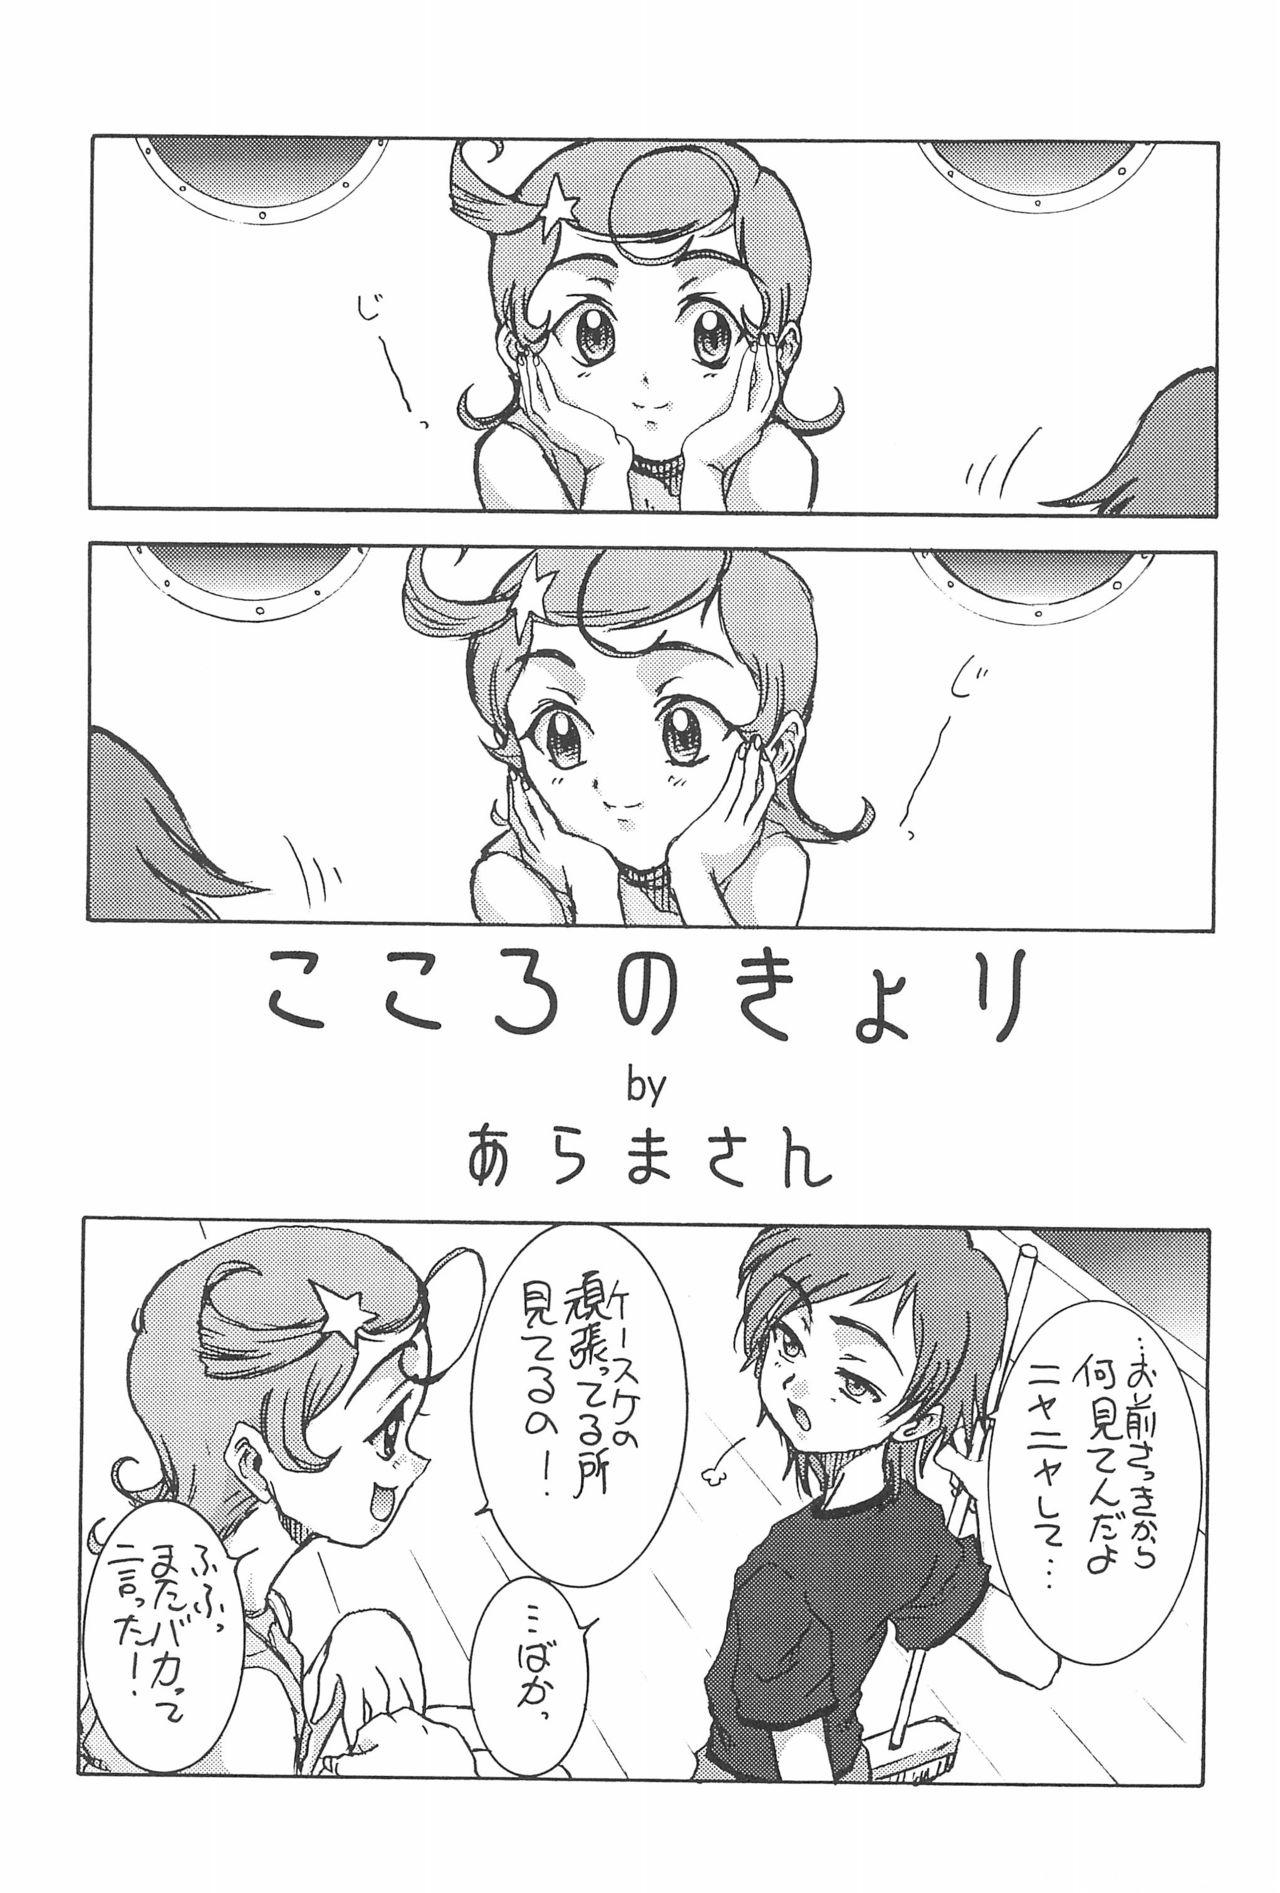 Comet-san Comical Comics 22